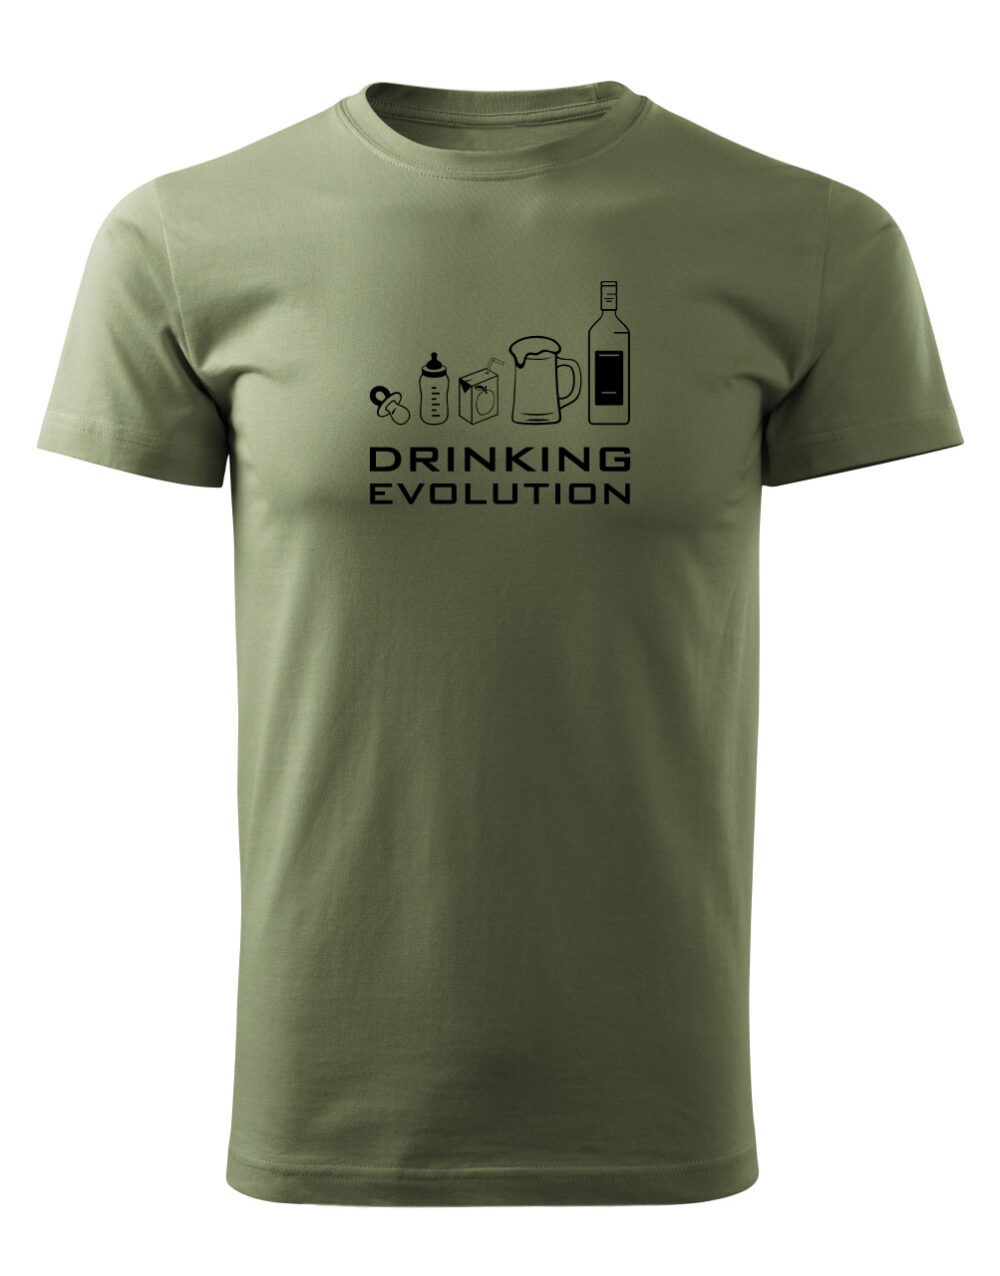 Pánské tričko s potiskem Drinking evolution vlašský ořech